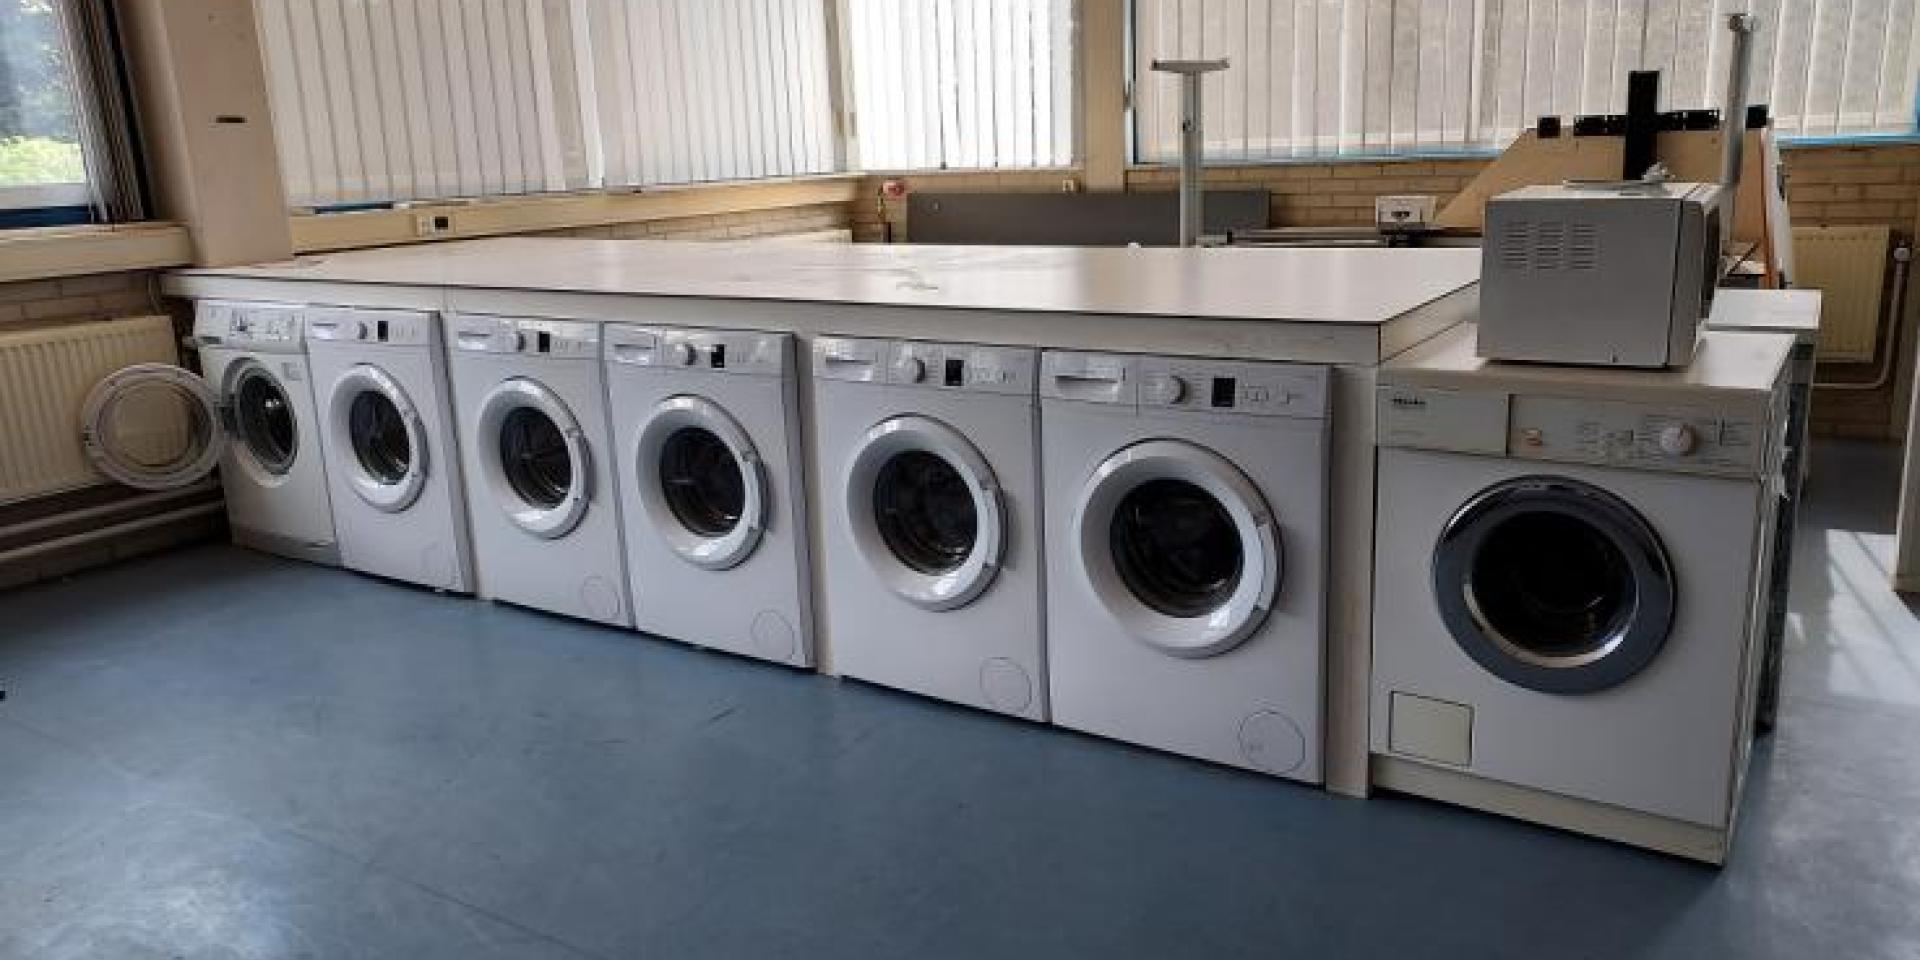 De wasmachines staan klaar voor gebruik.